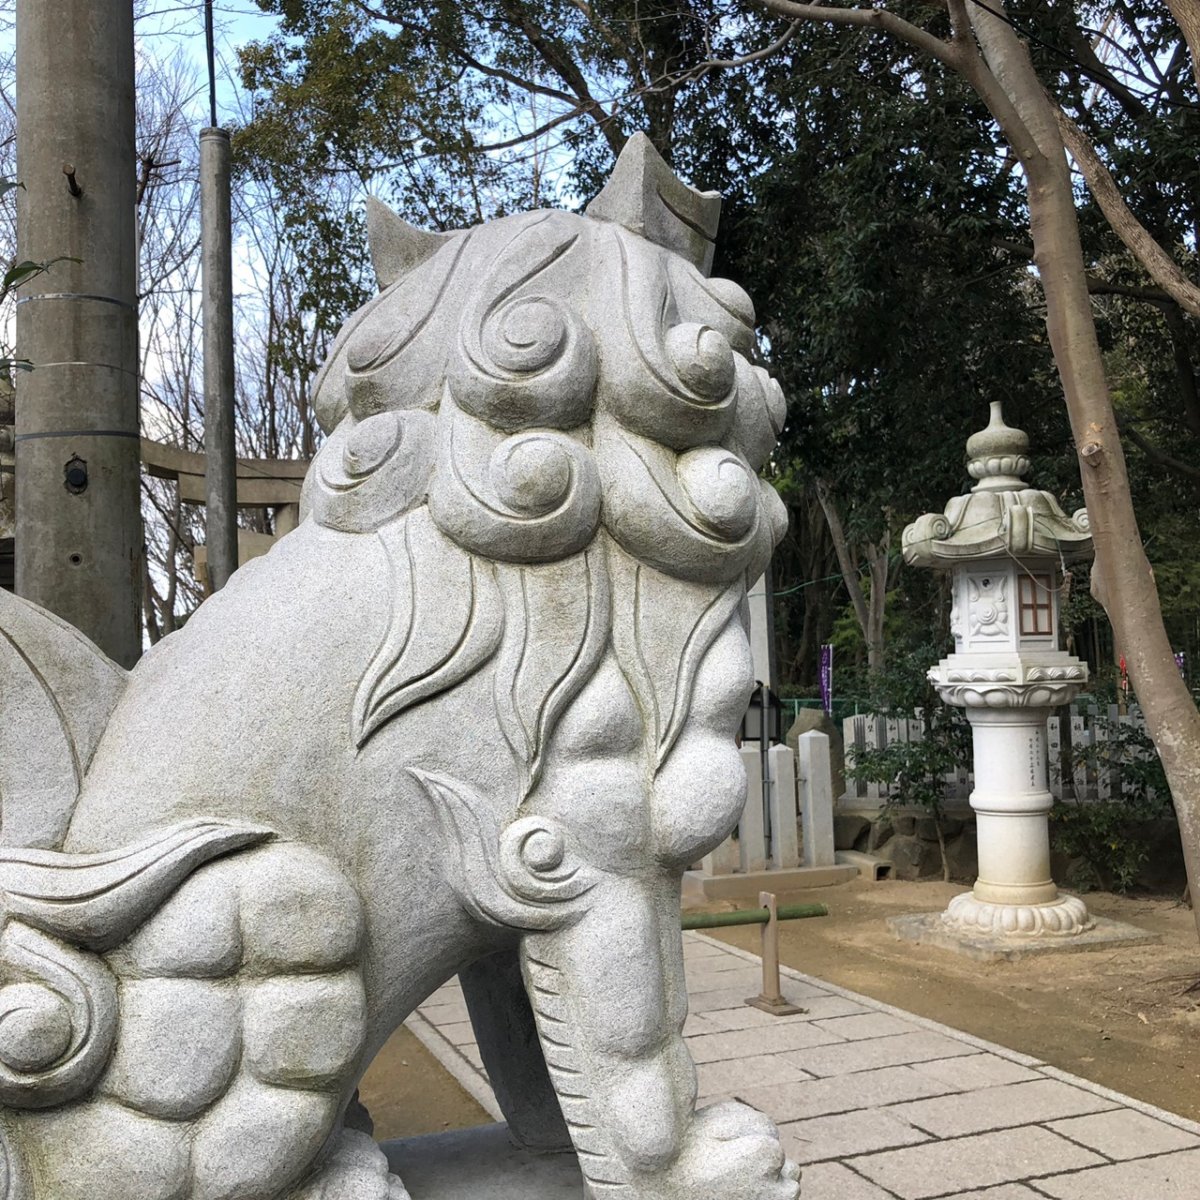 星田妙見宮の狛犬